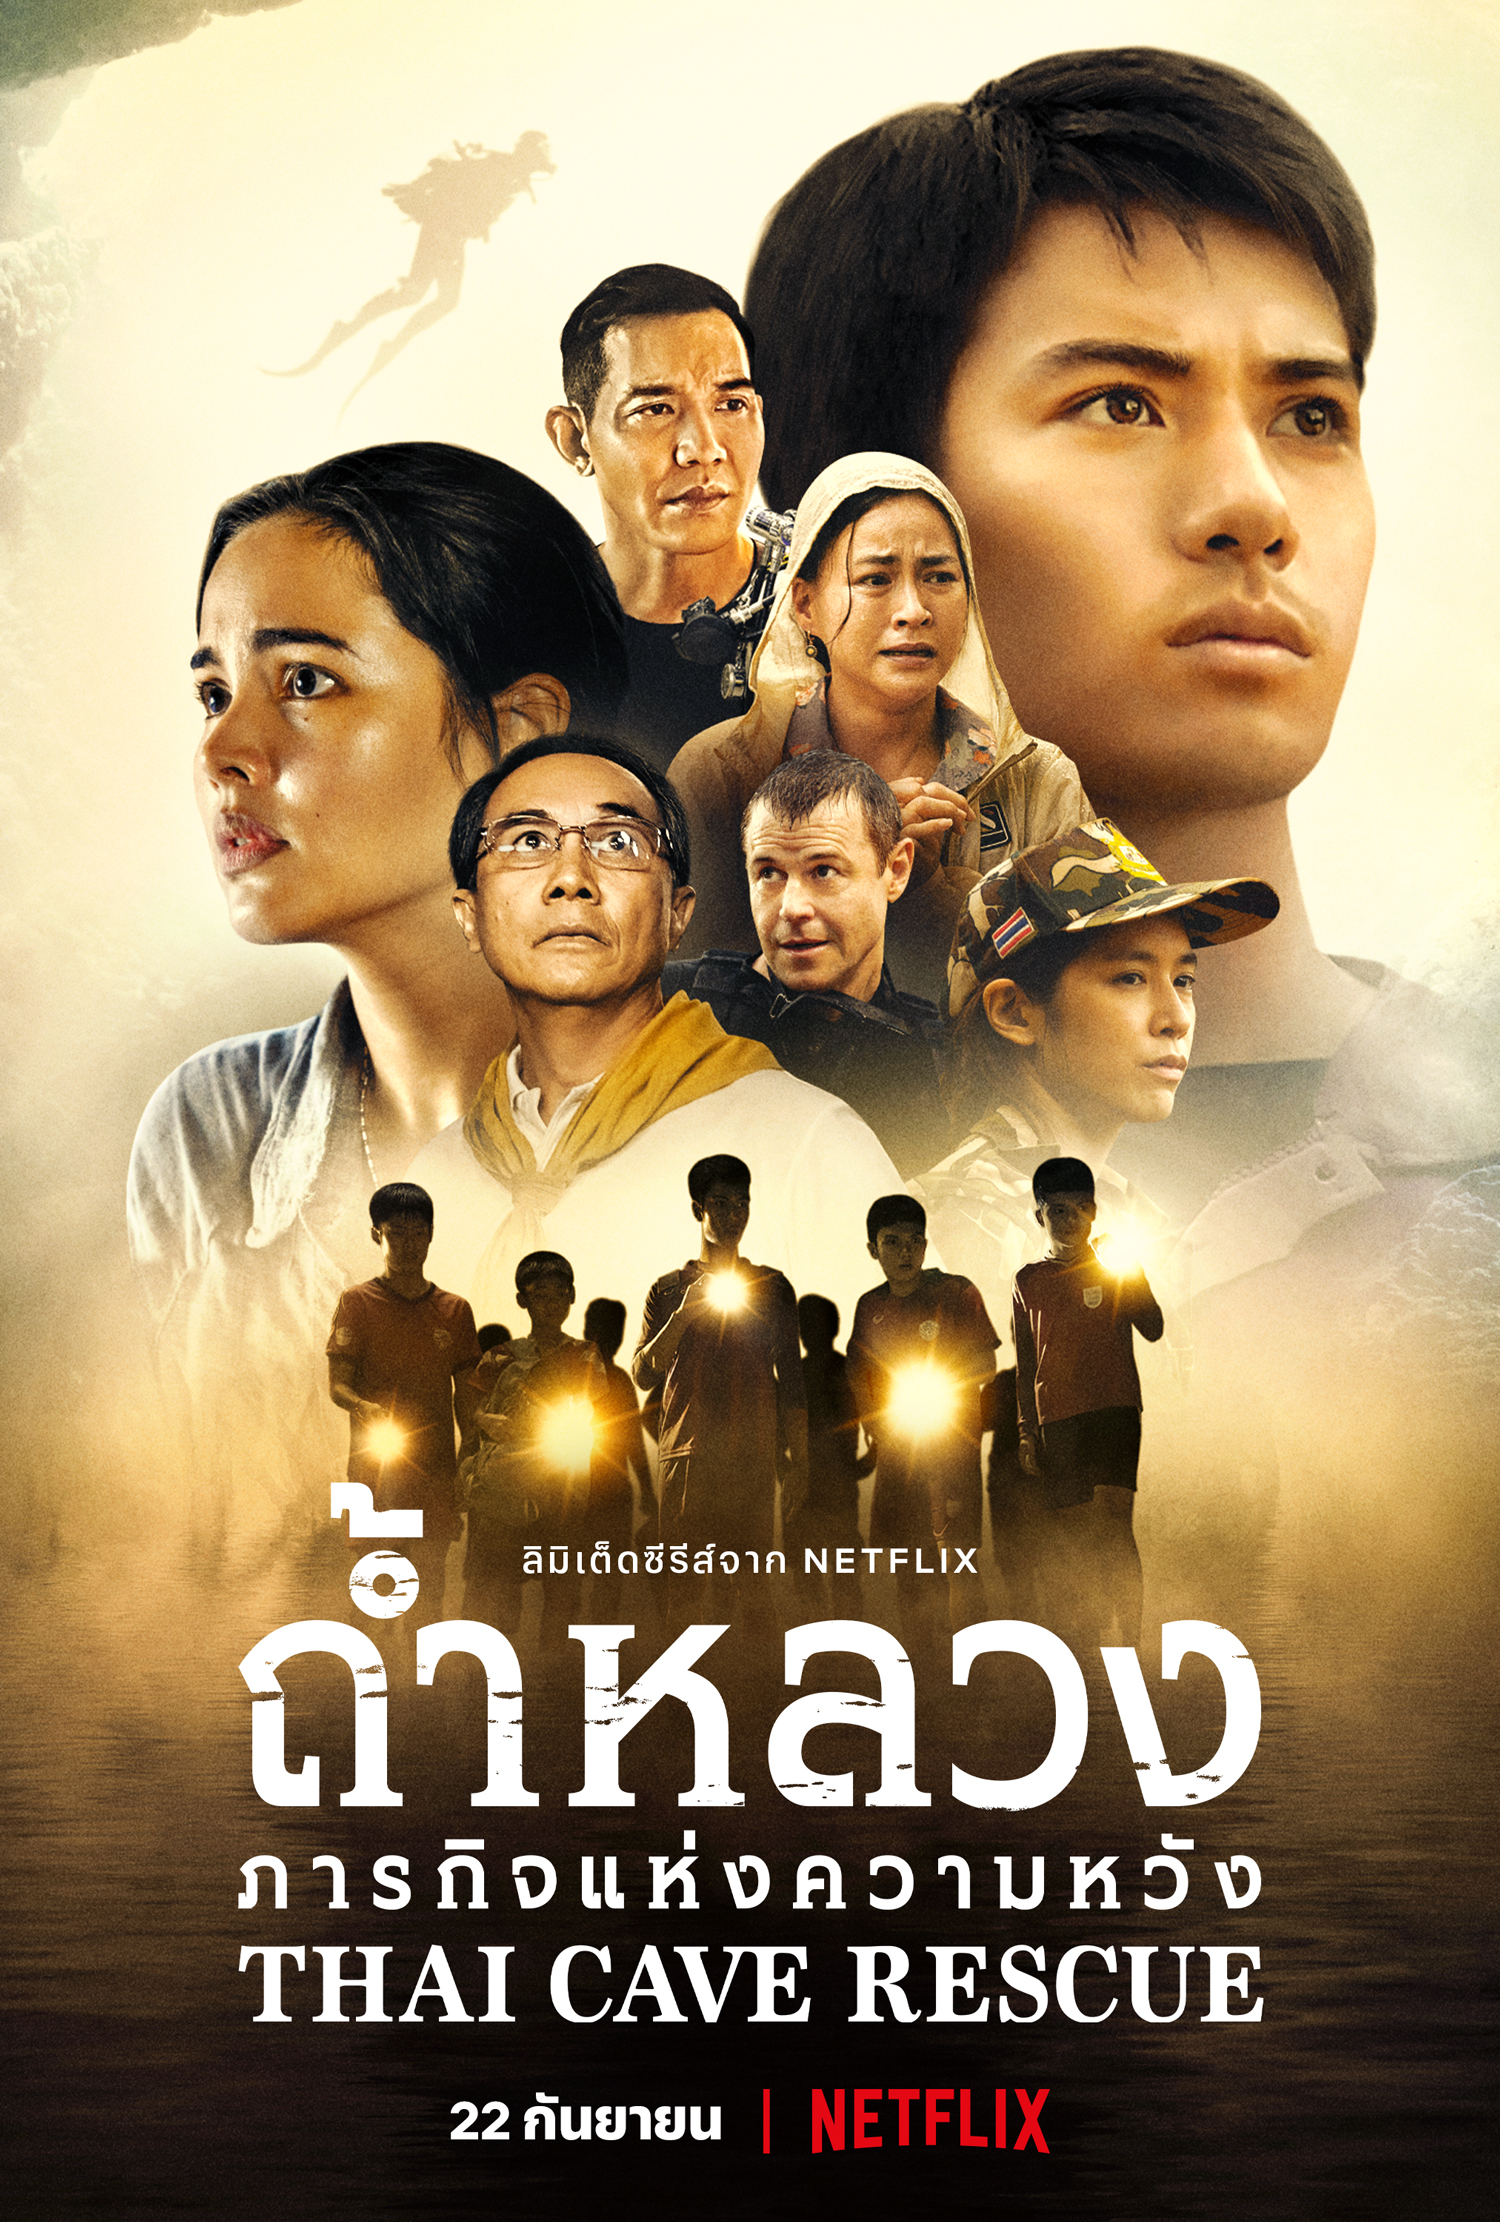 ดูหนังออนไลน์ฟรี Thai Cave Rescue ถ้ำหลวง ภารกิจแห่งความหวัง